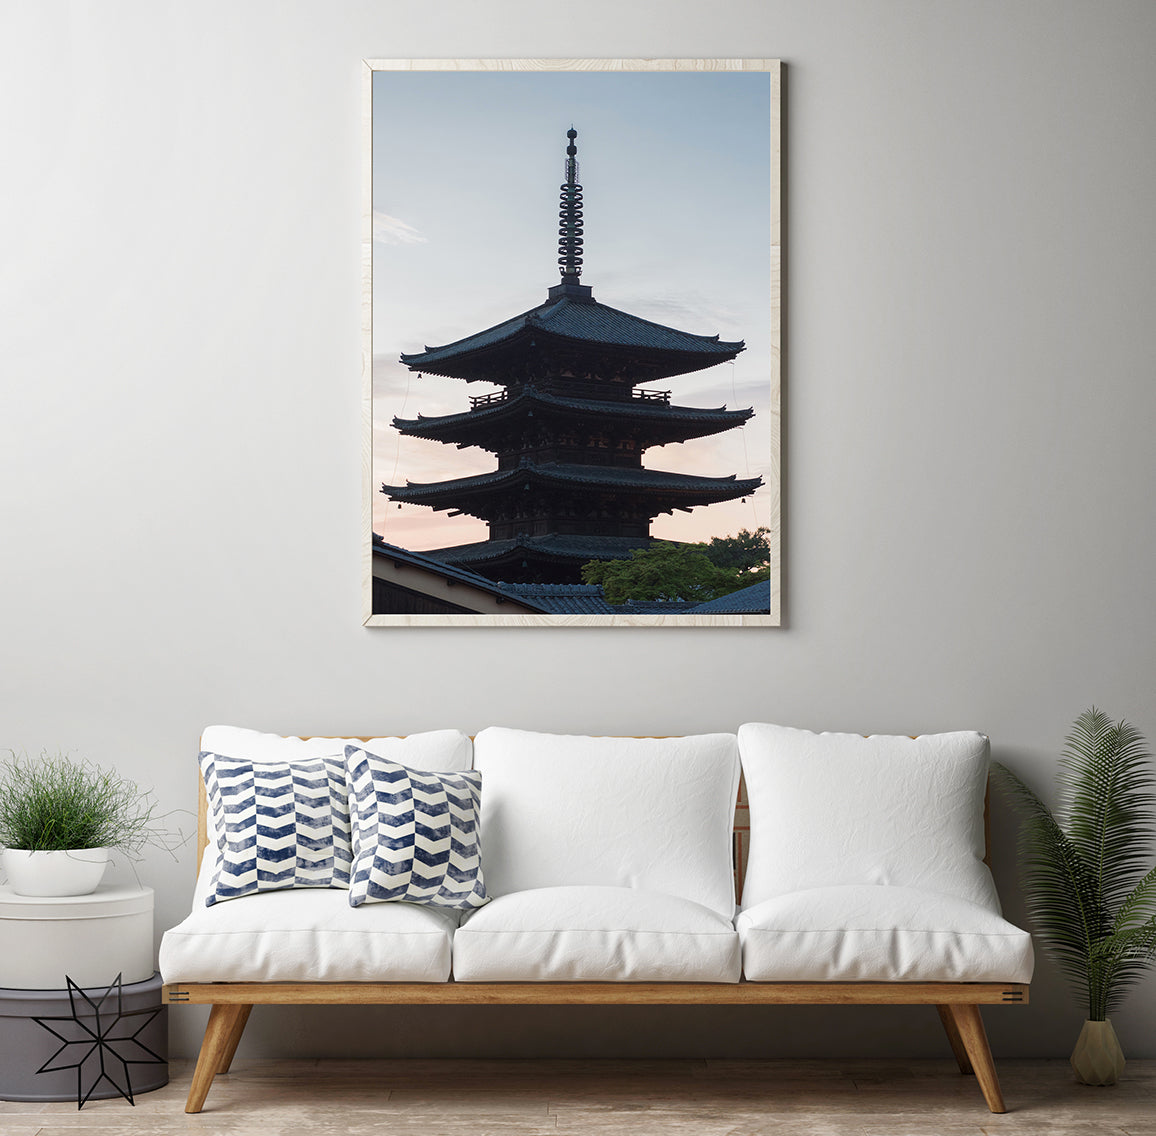 Kyoto - Yasaka Pagoda